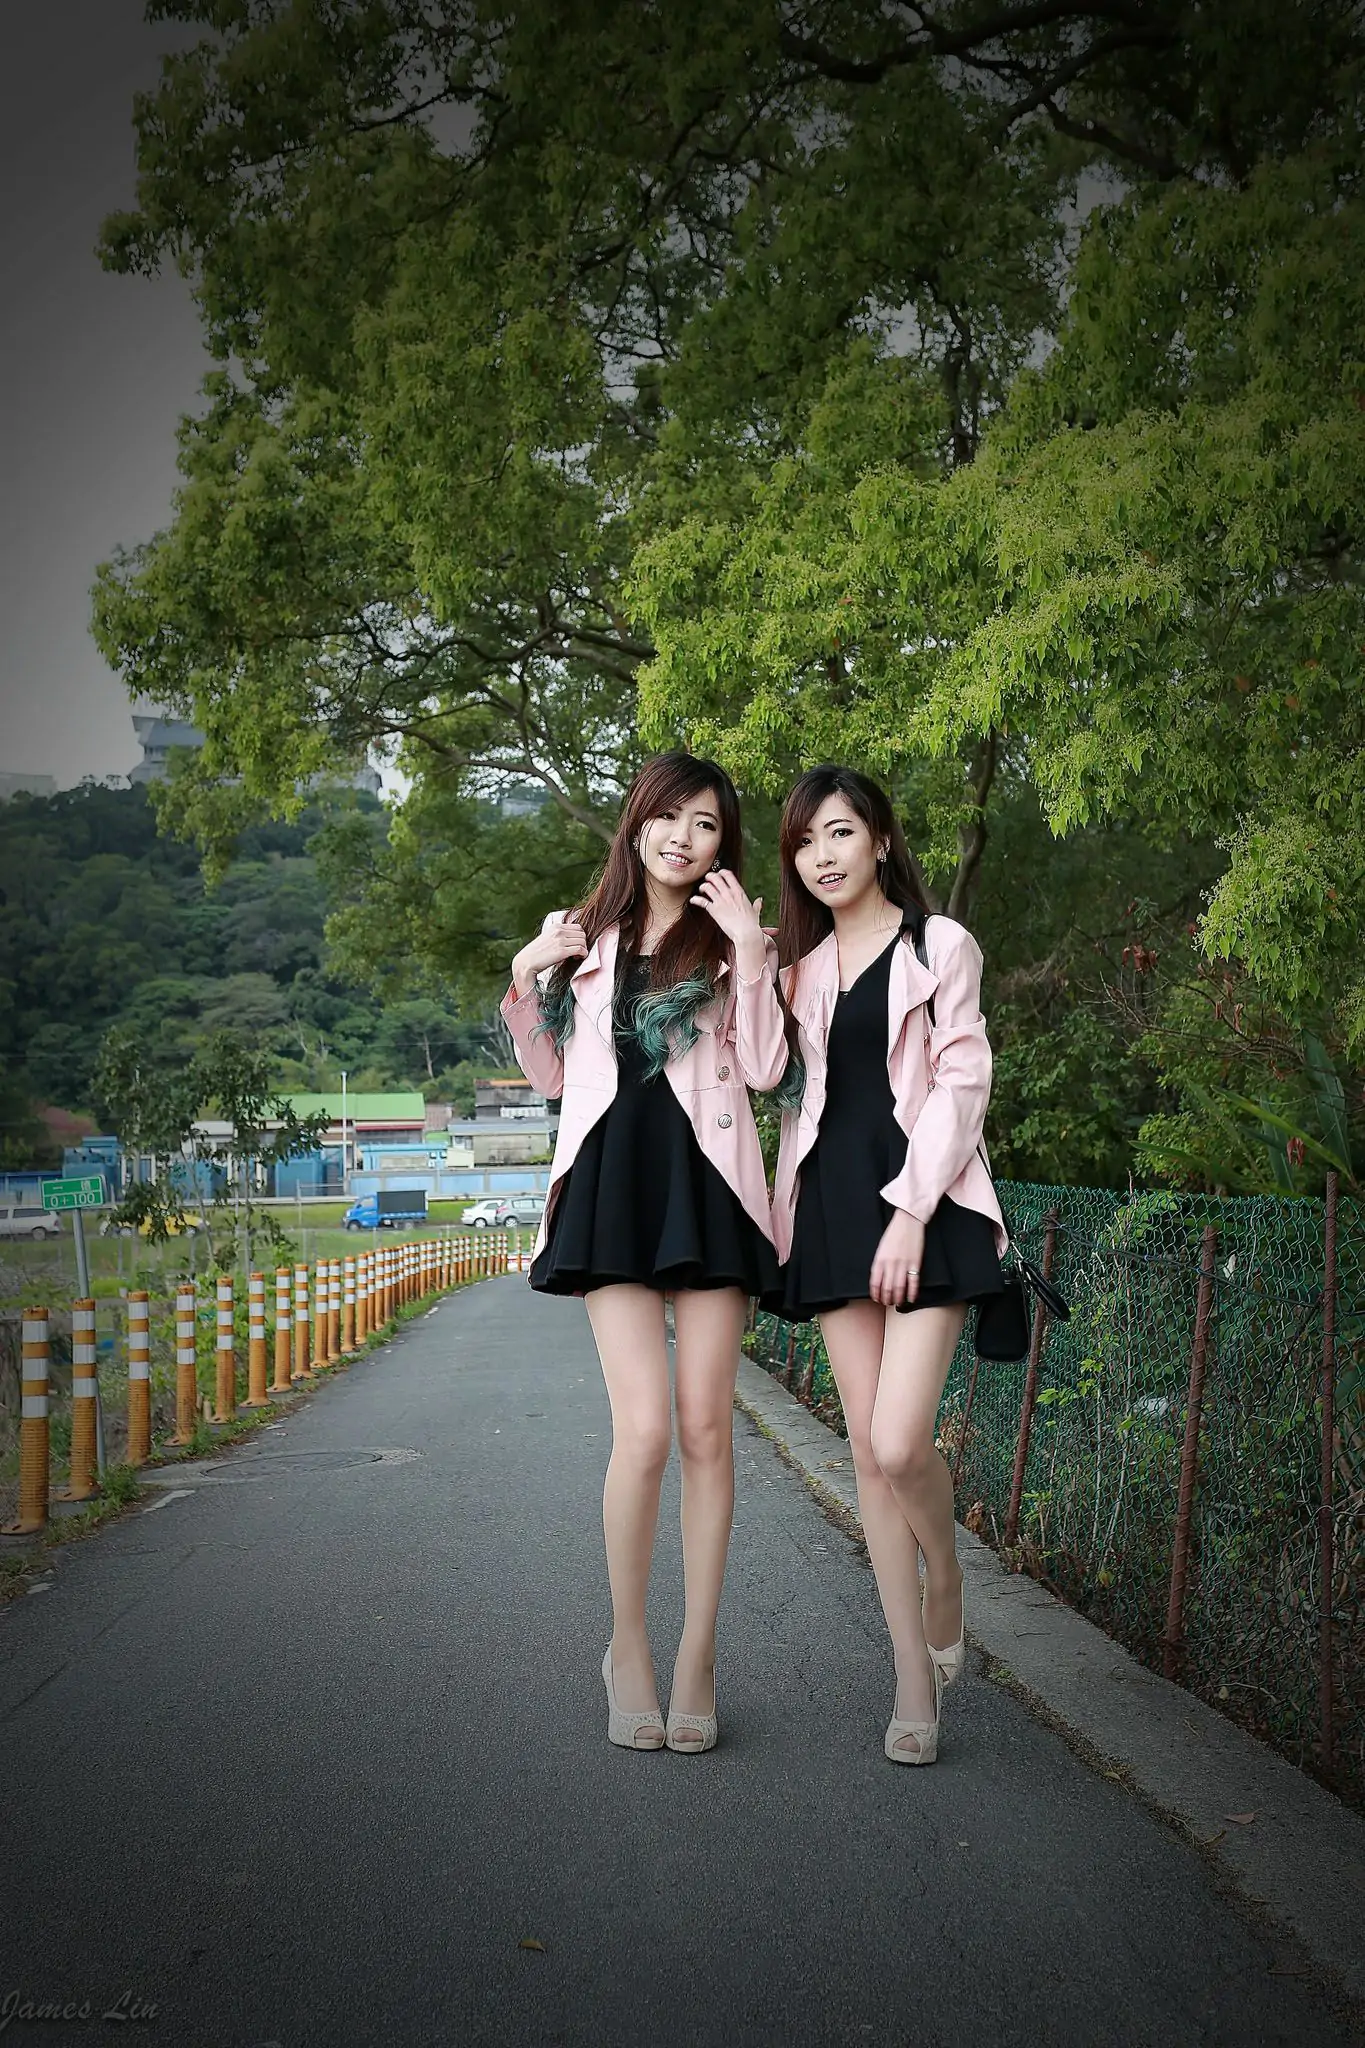 极品清纯甜美台湾双胞胎姐妹花清新外拍